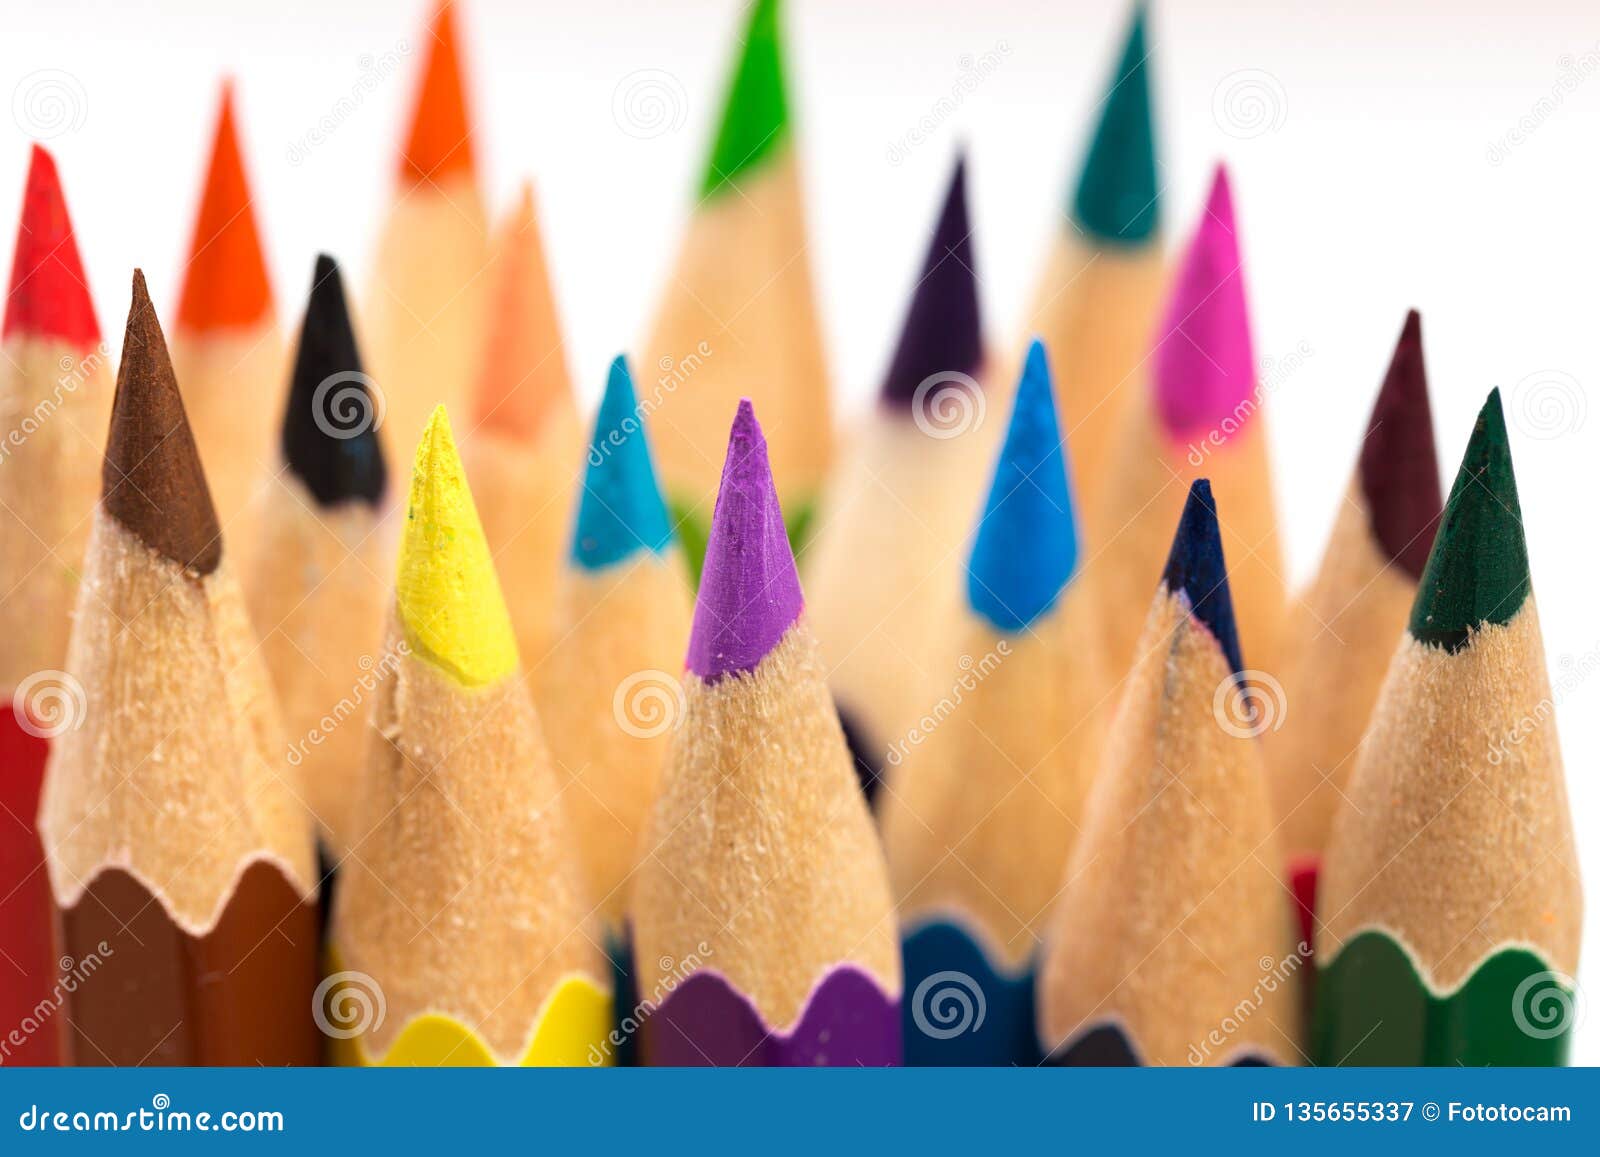 Покрасьте для того чтобы заточить карандаши. Цвет точит карандаши, закрывает вверх